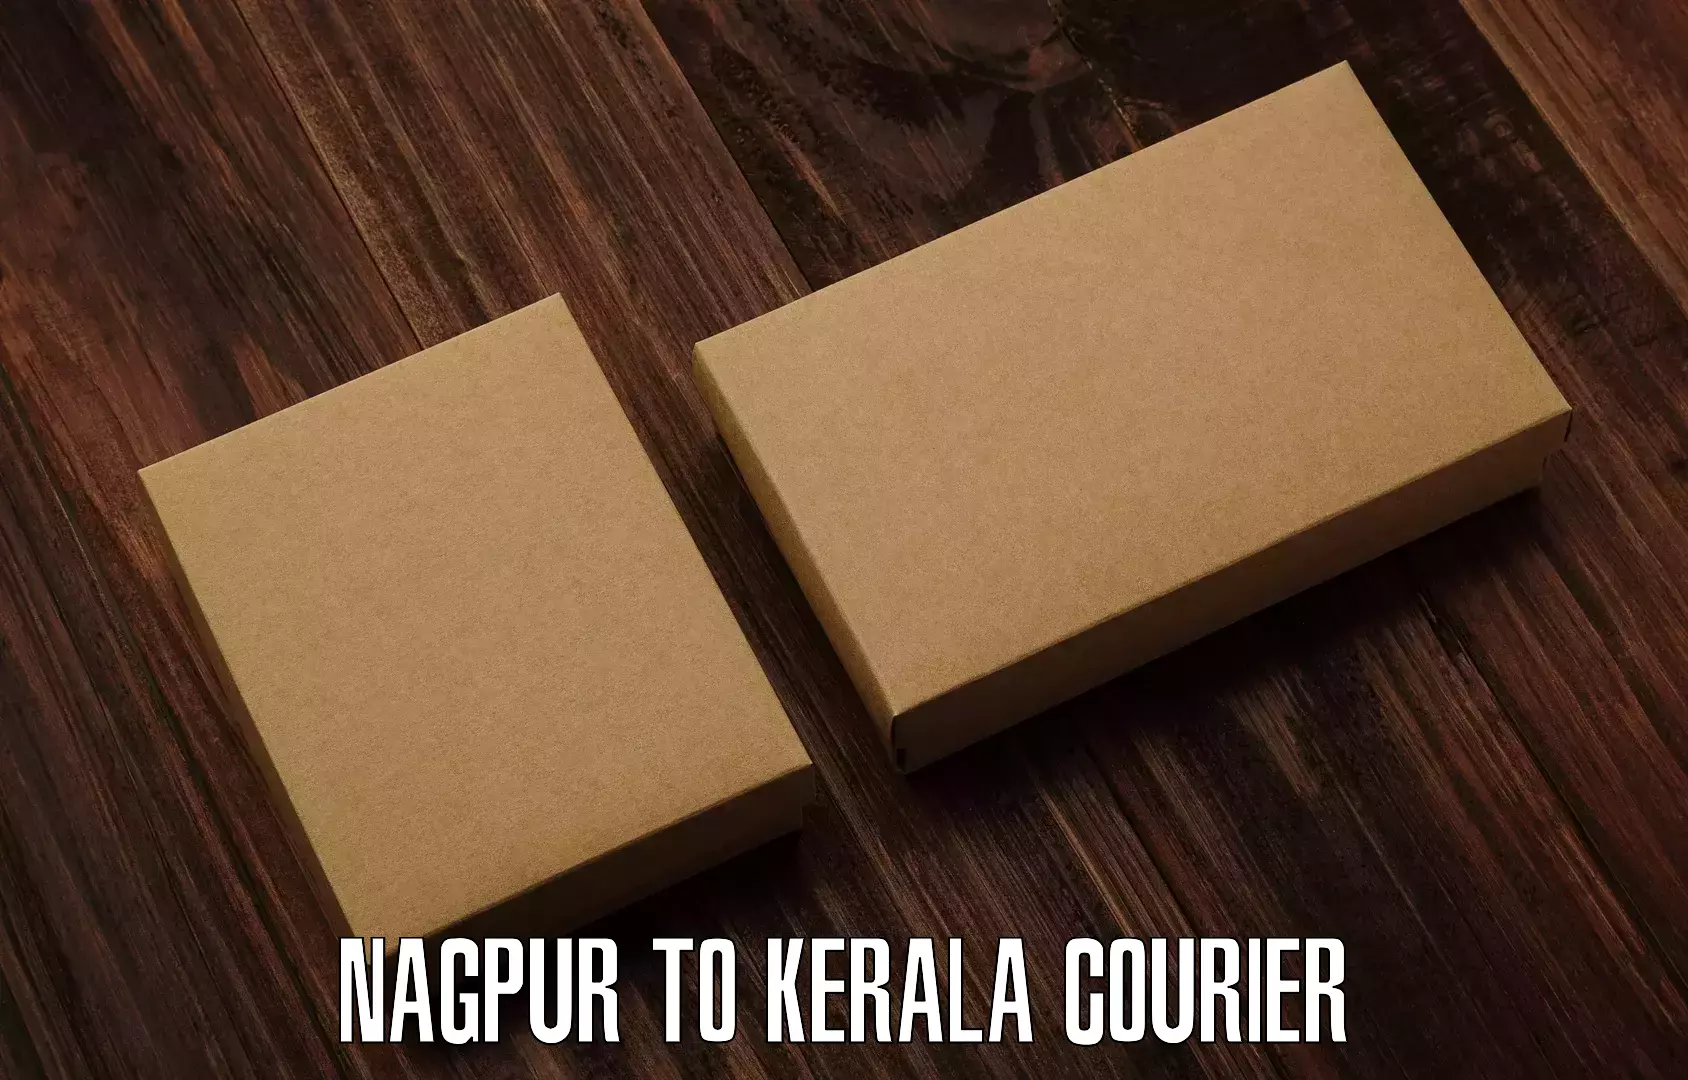 Local courier options Nagpur to Kakkayam